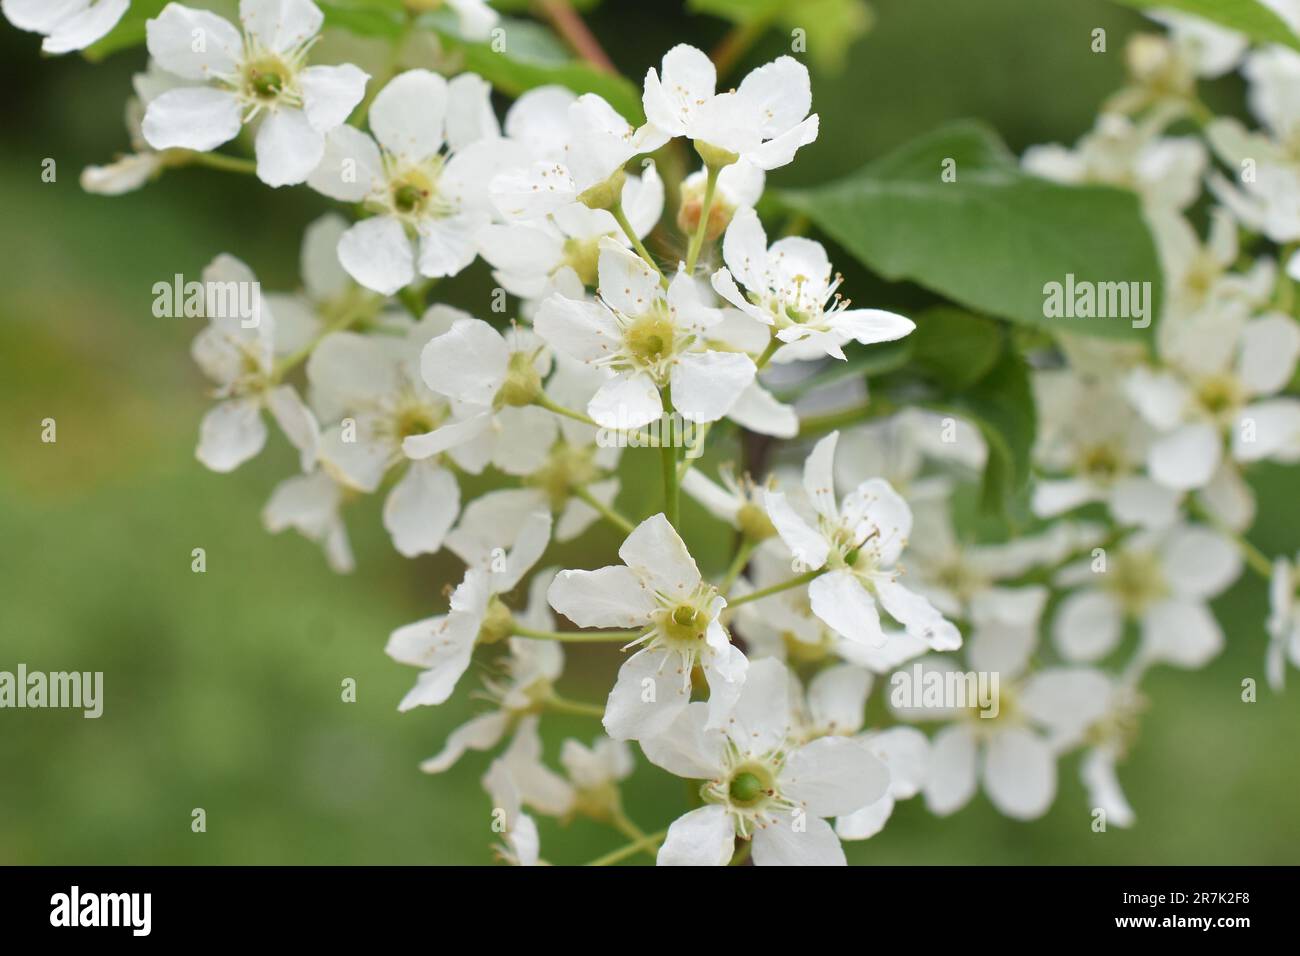 Nahaufnahme des Vogelkirschbaums Prunus padus blühende weiße Blumen im Frühling Stockfoto